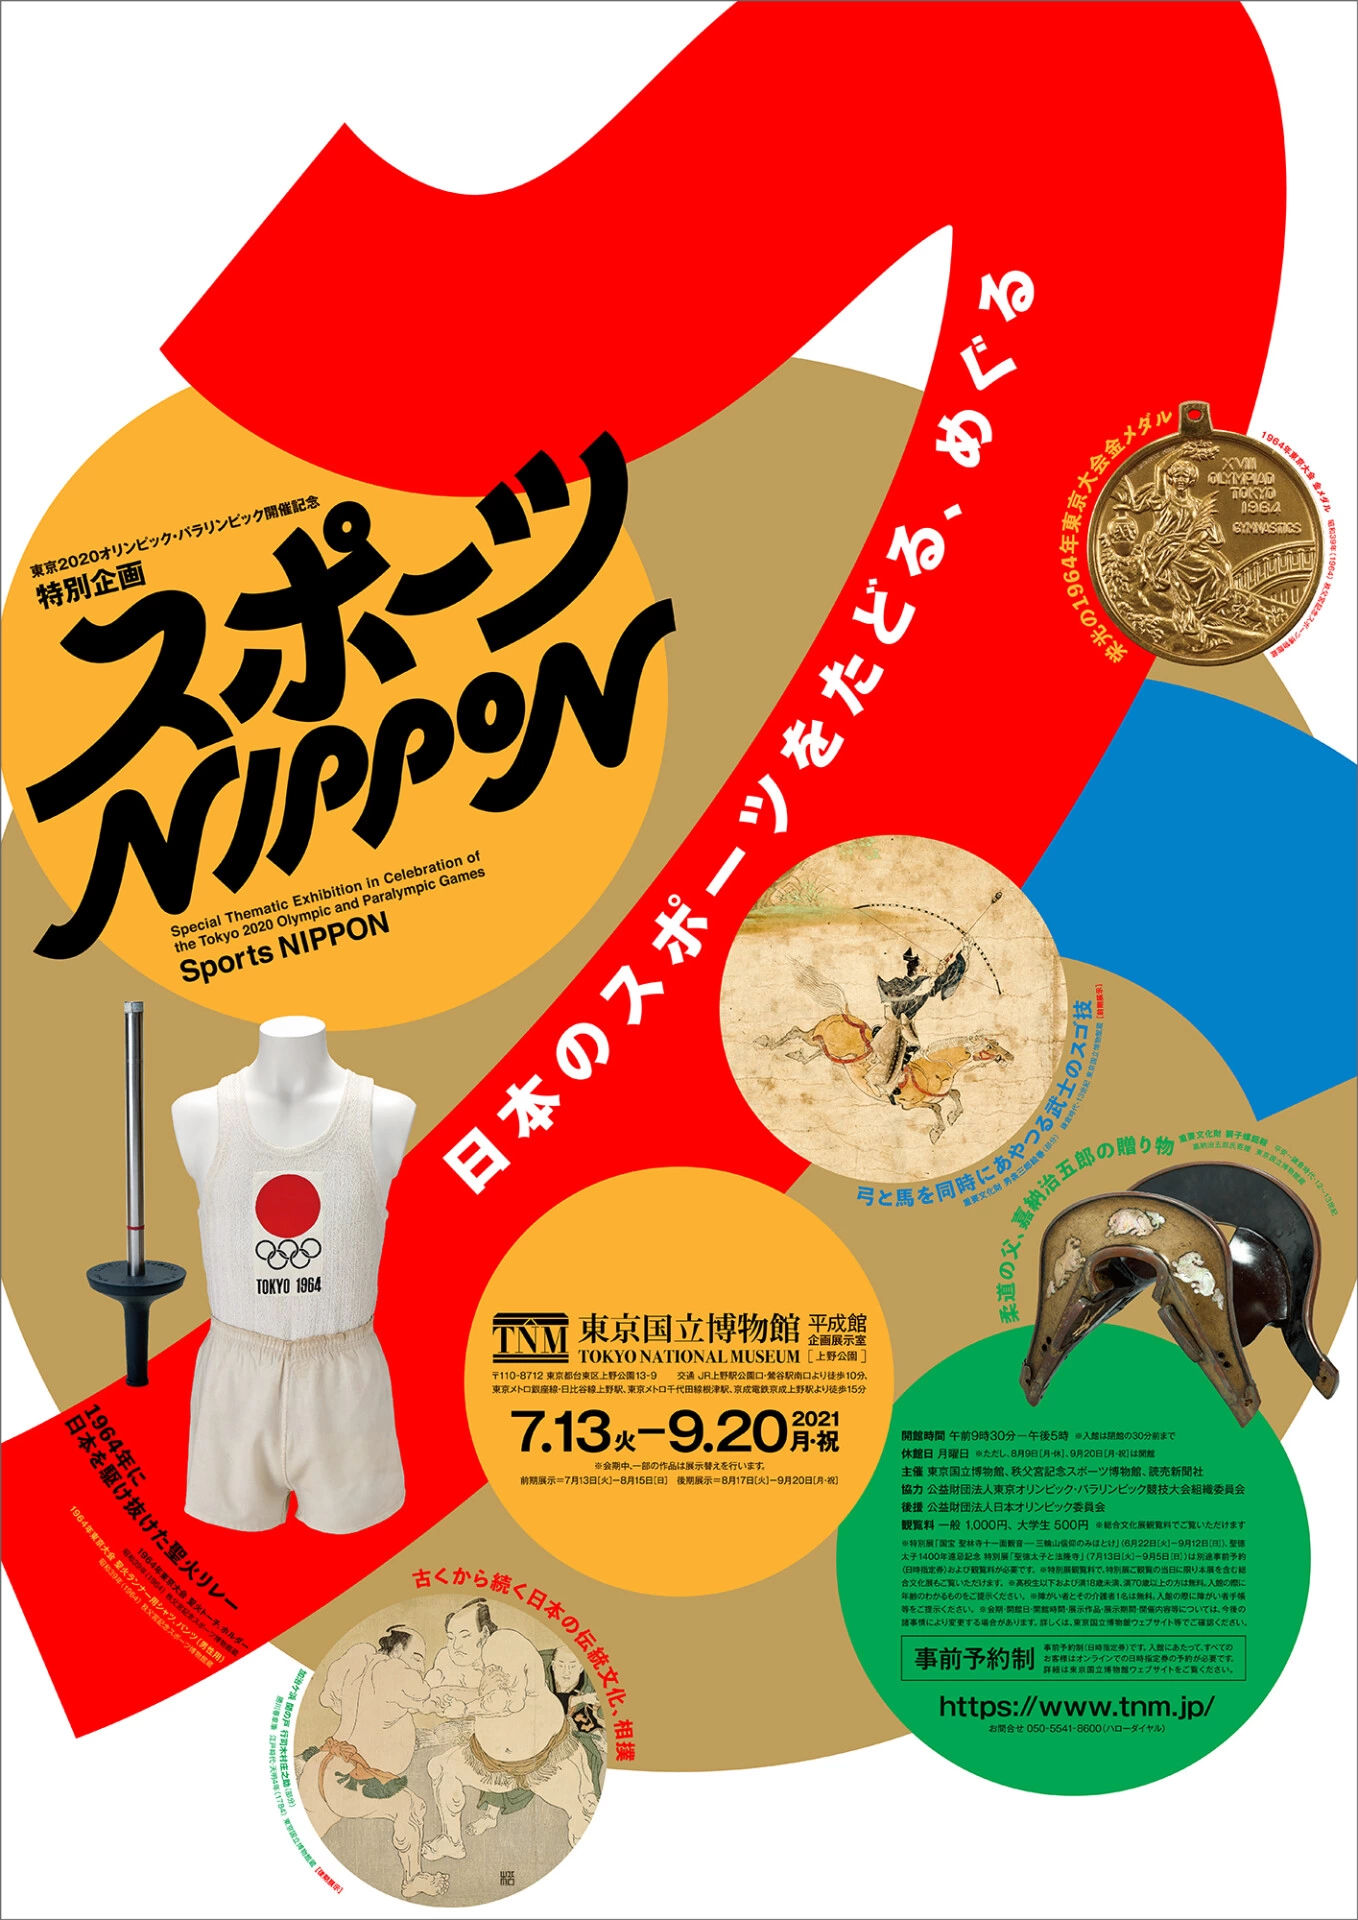 東京2020オリンピック・パラリンピック開催記念 特別企画「スポーツ NIPPON」